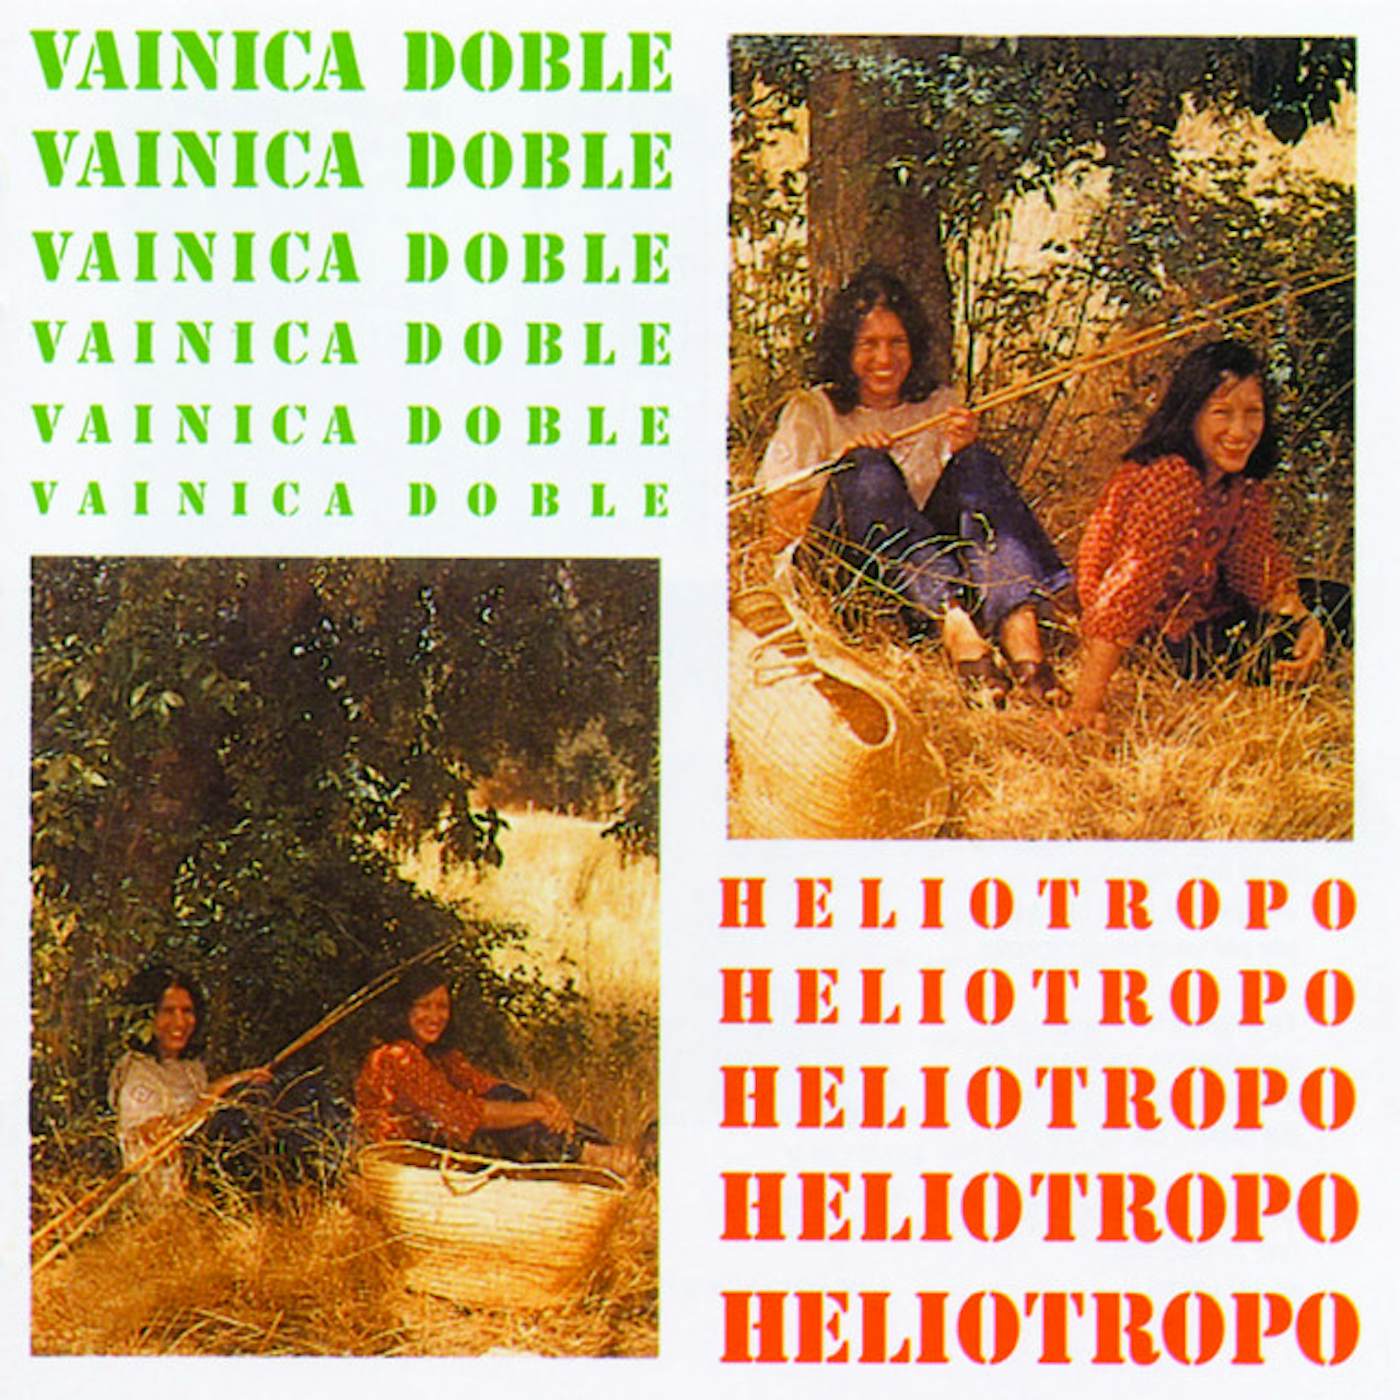 Vainica Doble Heliotropo Vinyl Record